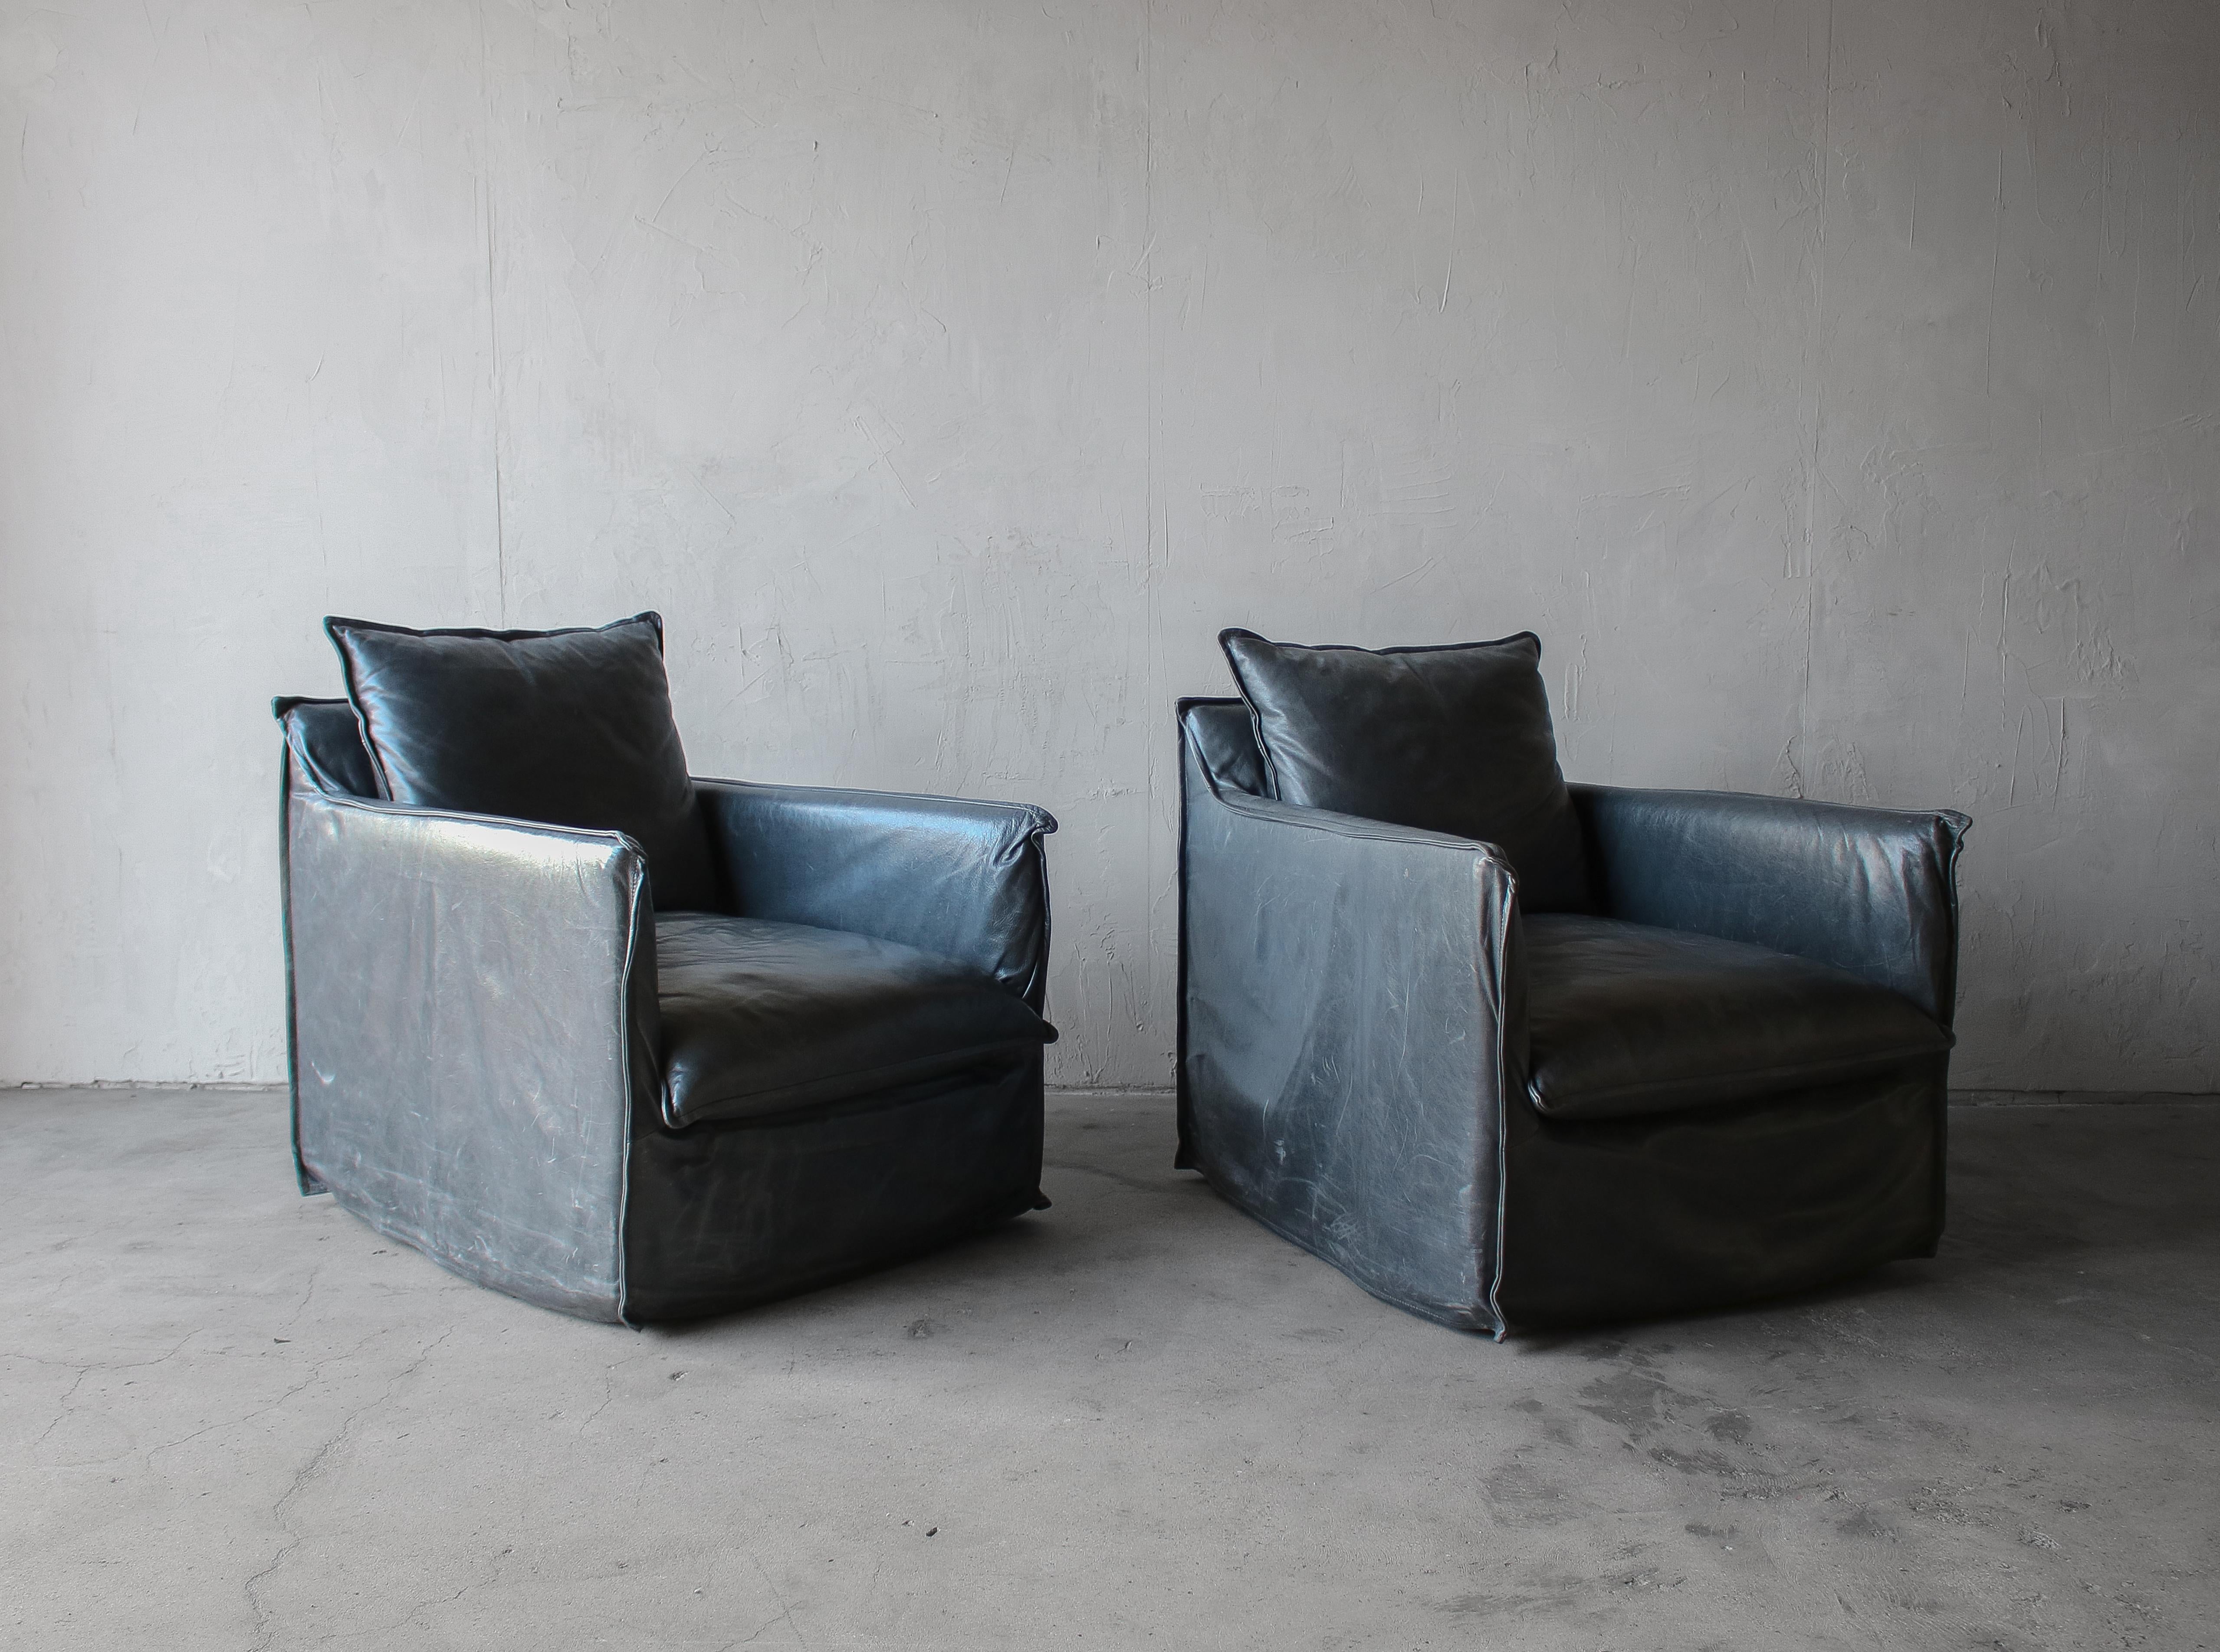 Belle paire de fauteuils pivotants en cuir.  Les chaises sont recouvertes d'une housse en cuir unique qui leur confère un véritable aspect accueillant.  Le cuir est doux comme du beurre dans un bleu fumé foncé, un véritable croisement entre le bleu